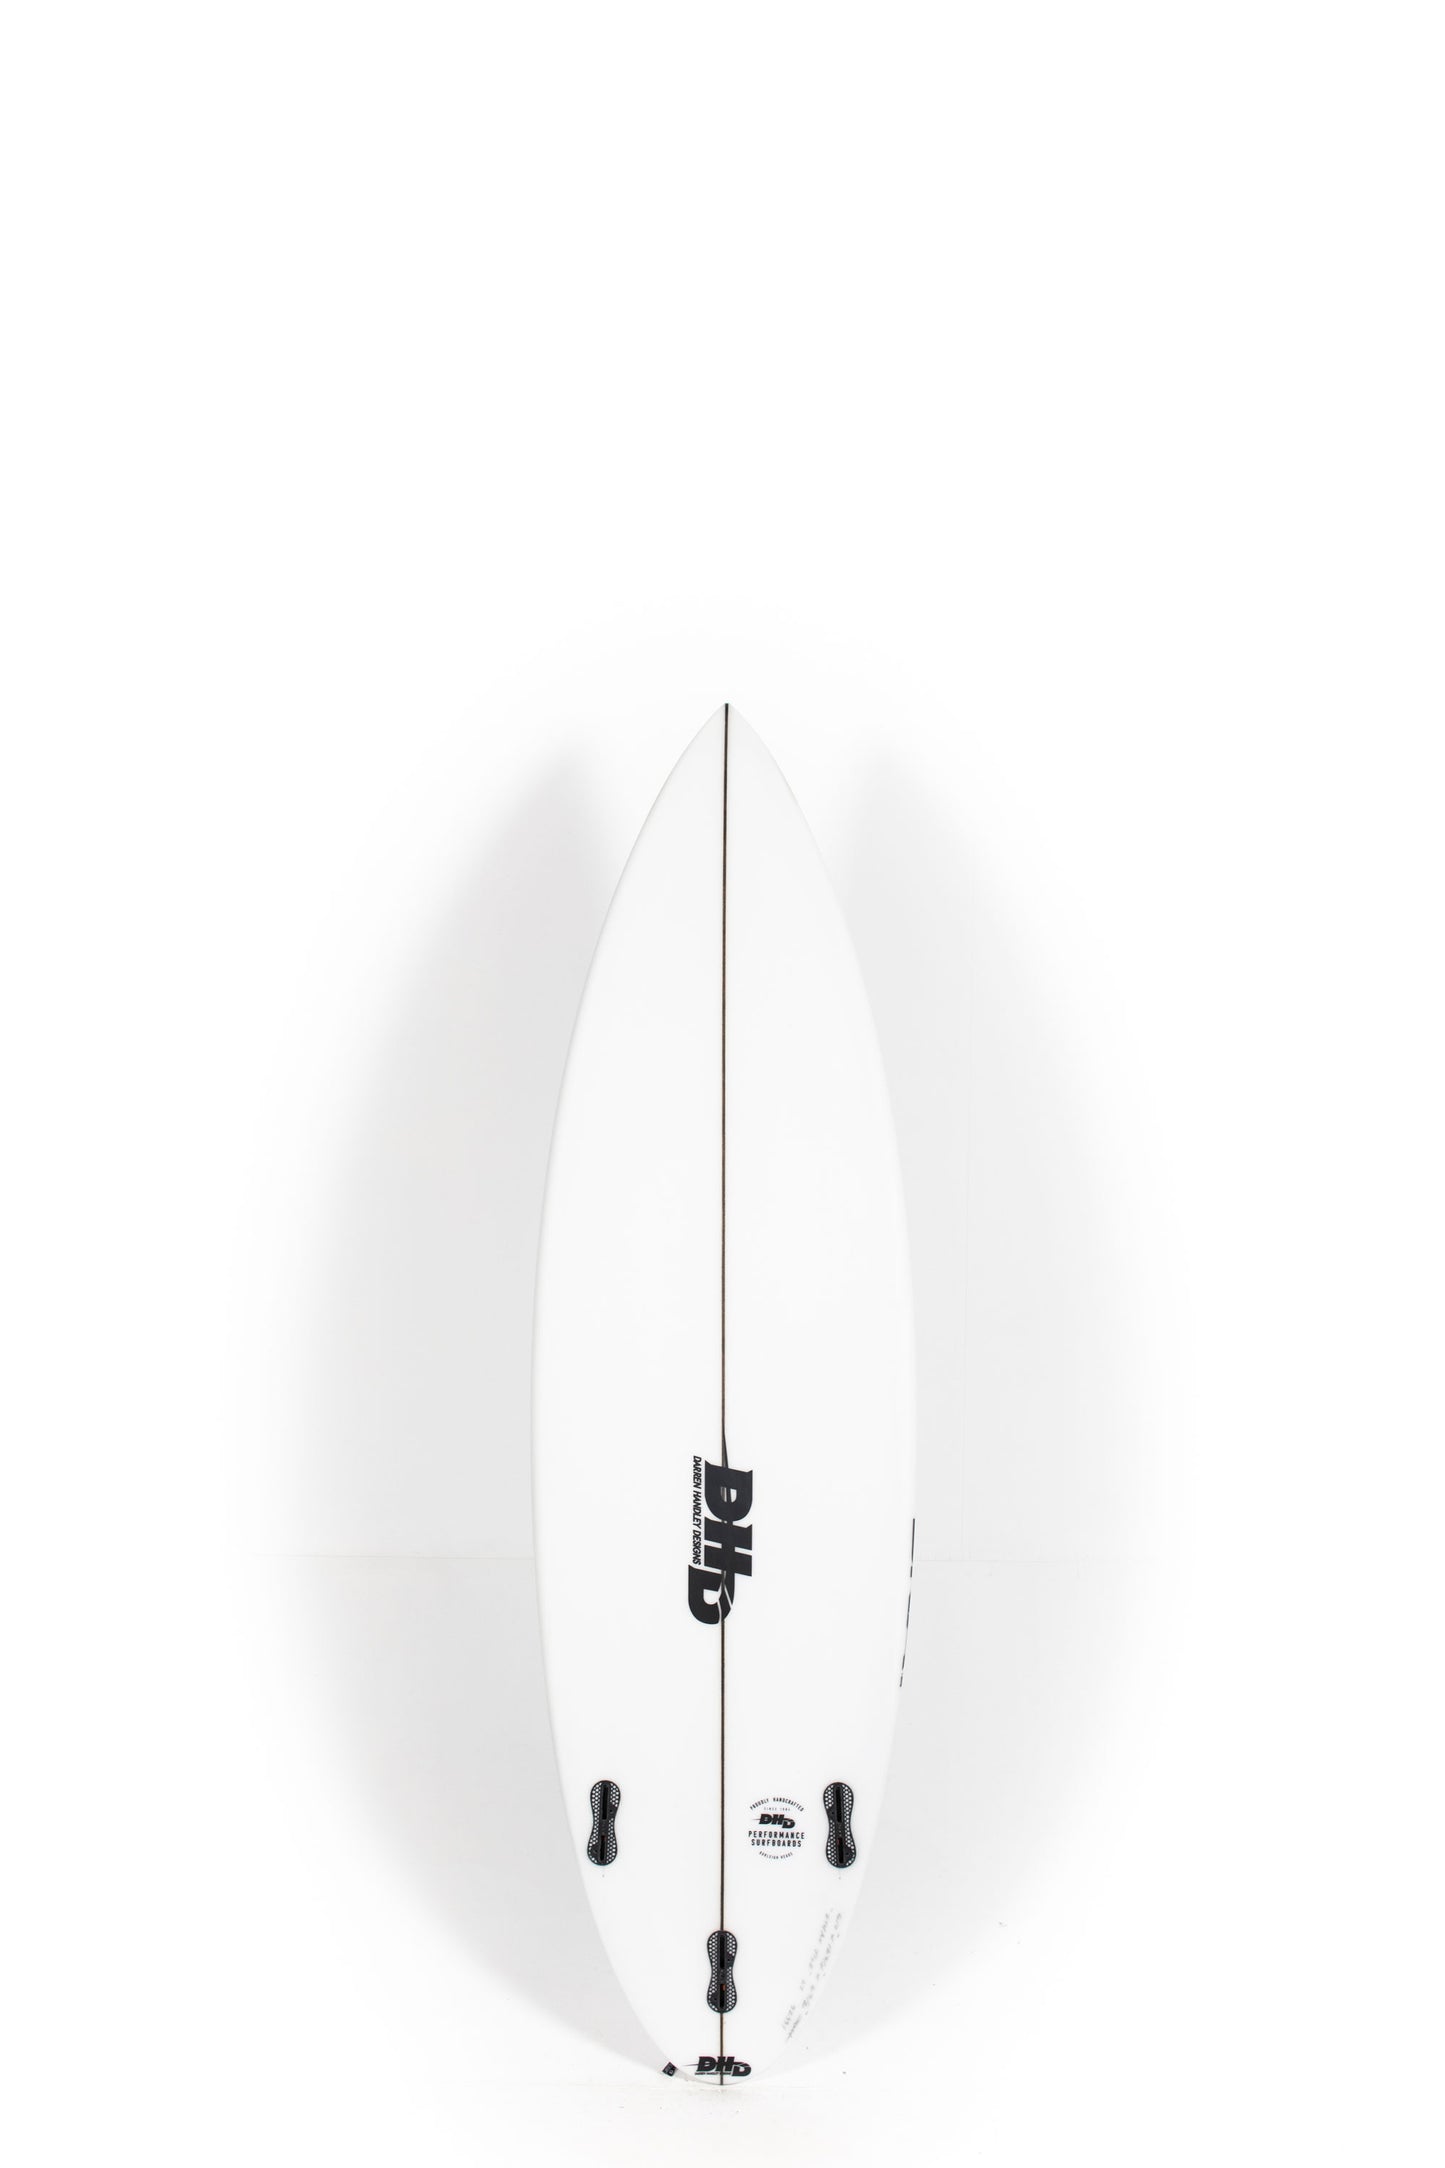 Pukas Surf Shop - DHD - EE DNA by Darren Handley - 5'10" x 18 3/4 x 2 3/8 - 27L - DHDEEDNA510